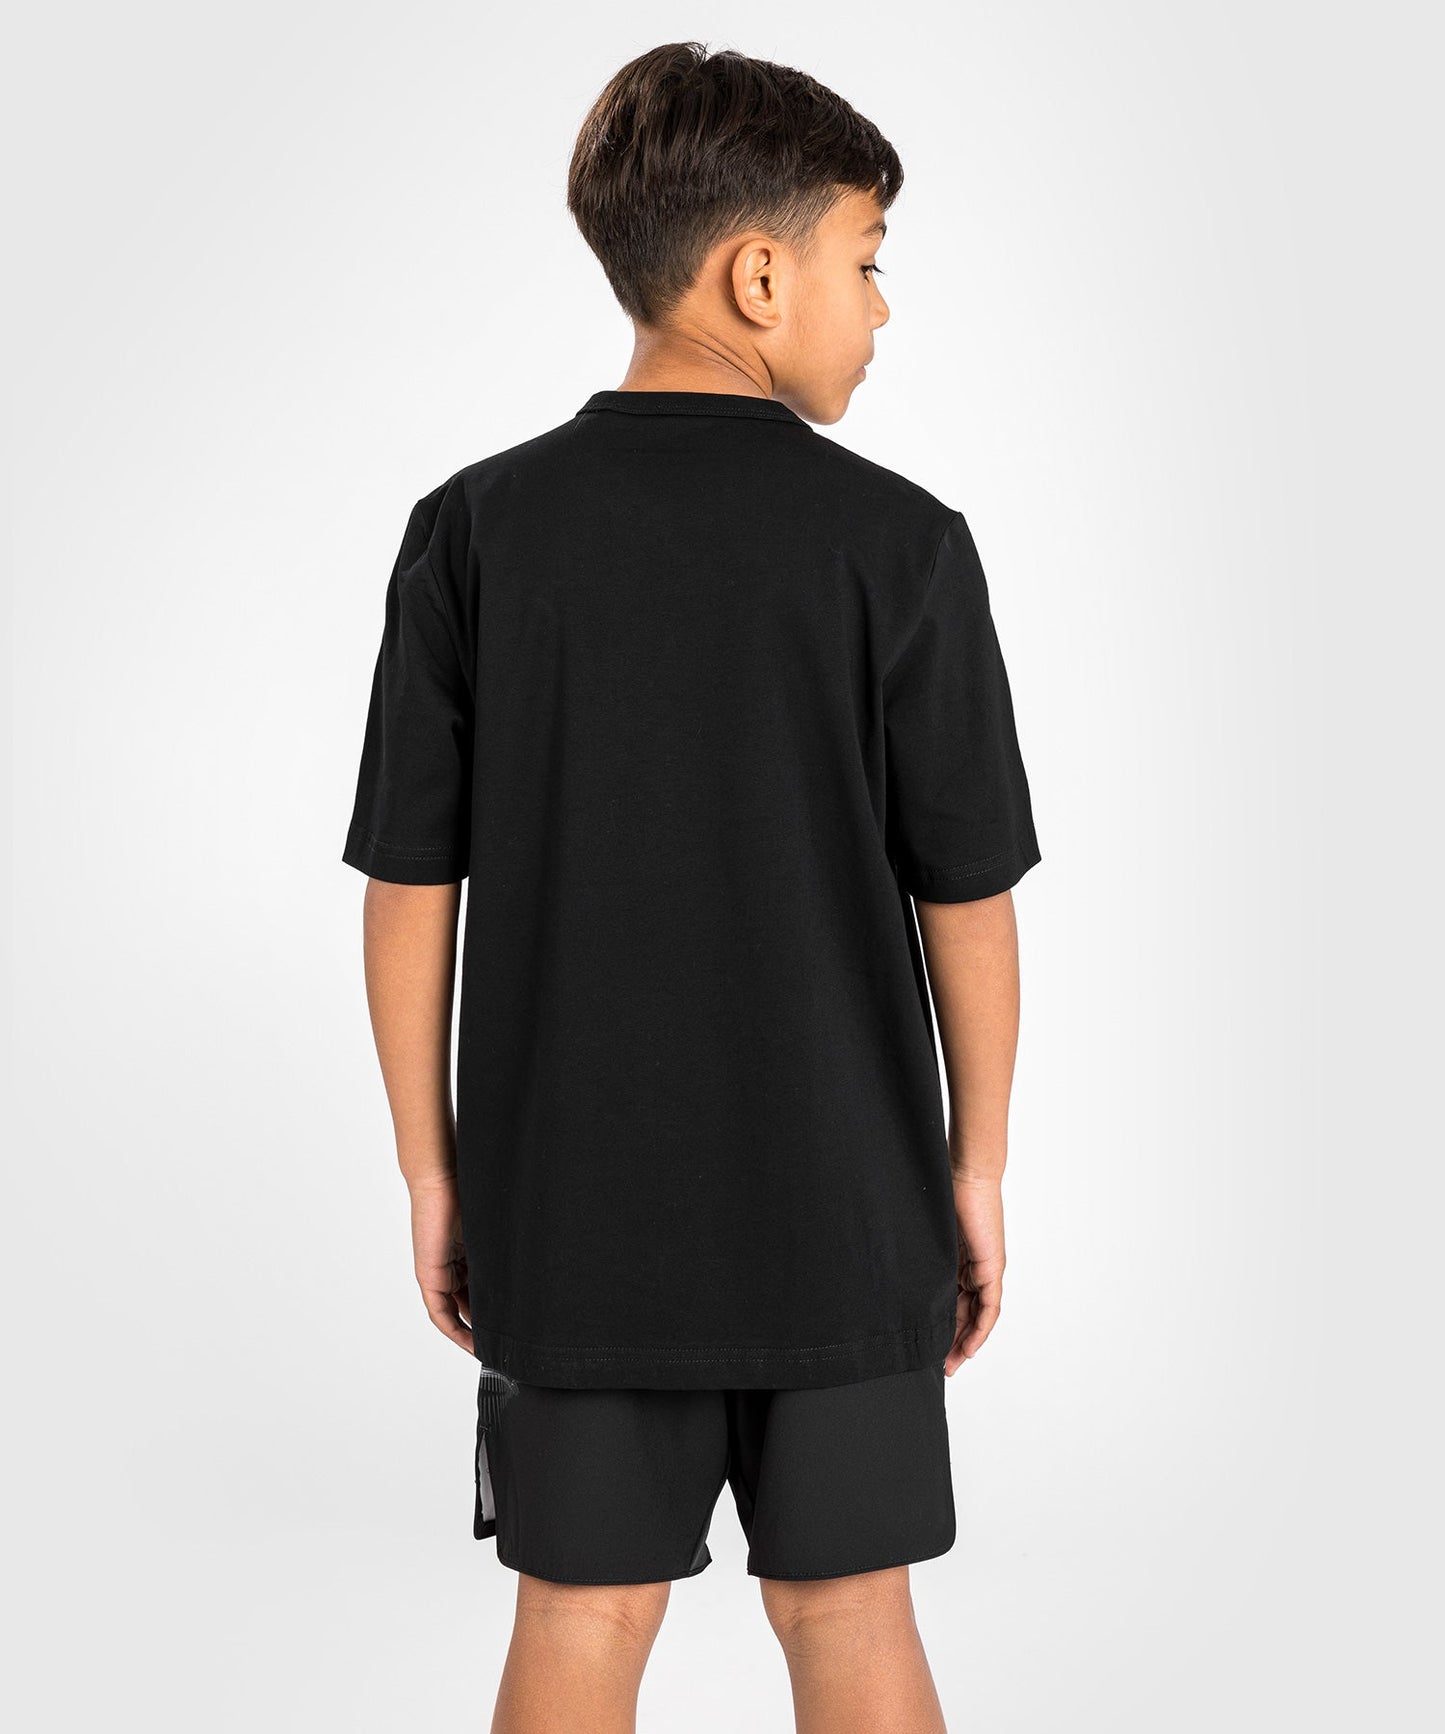 Venum Gorilla Jungle Kinder T-Shirt - Schwarz/Weiß